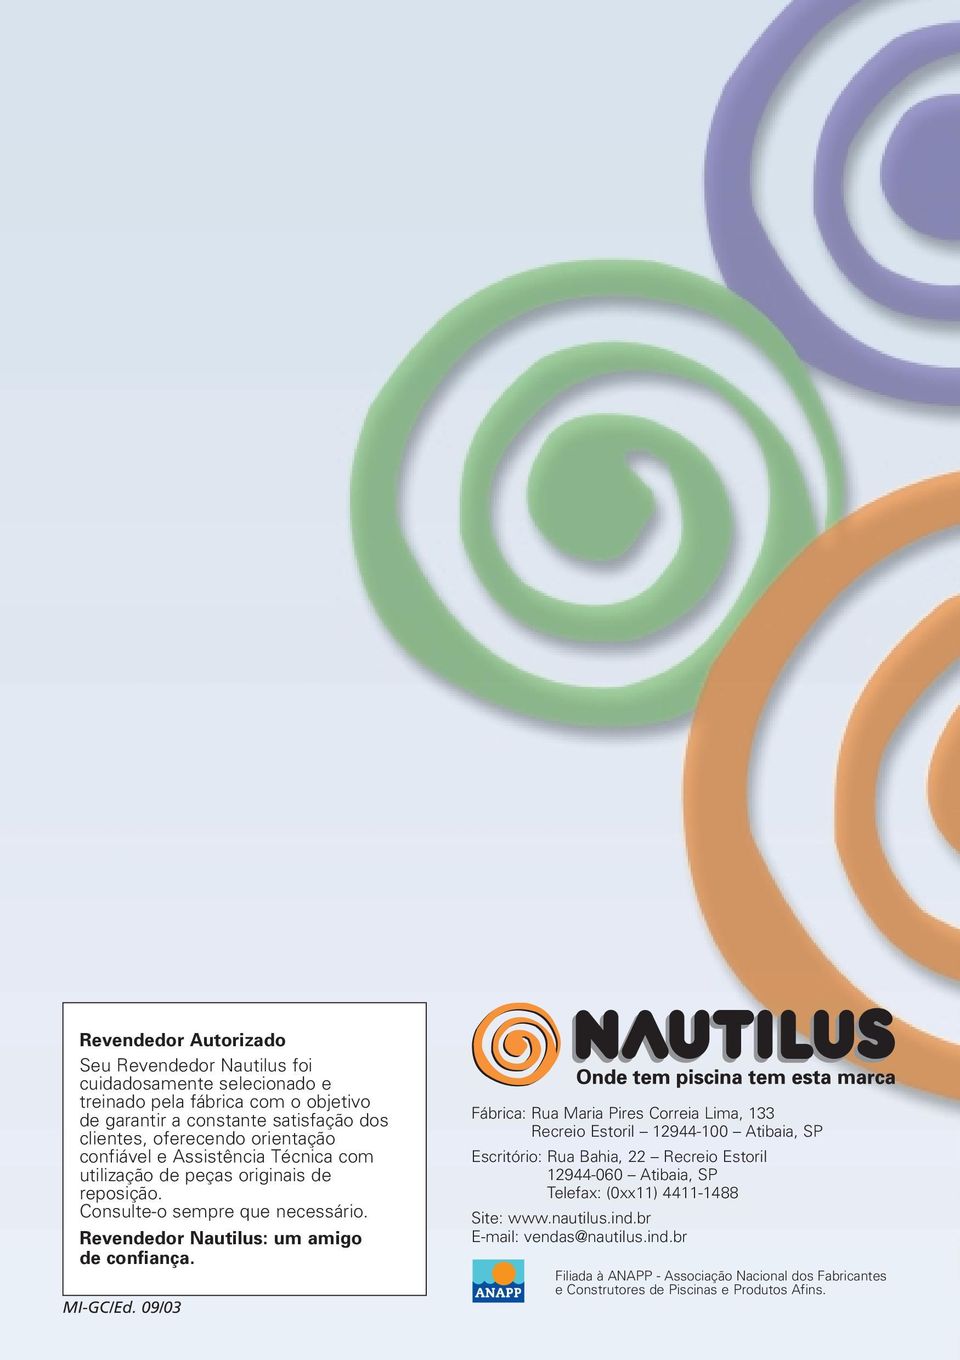 Revendedor Nautilus: um amigo de confiança. MI-GC/Ed.